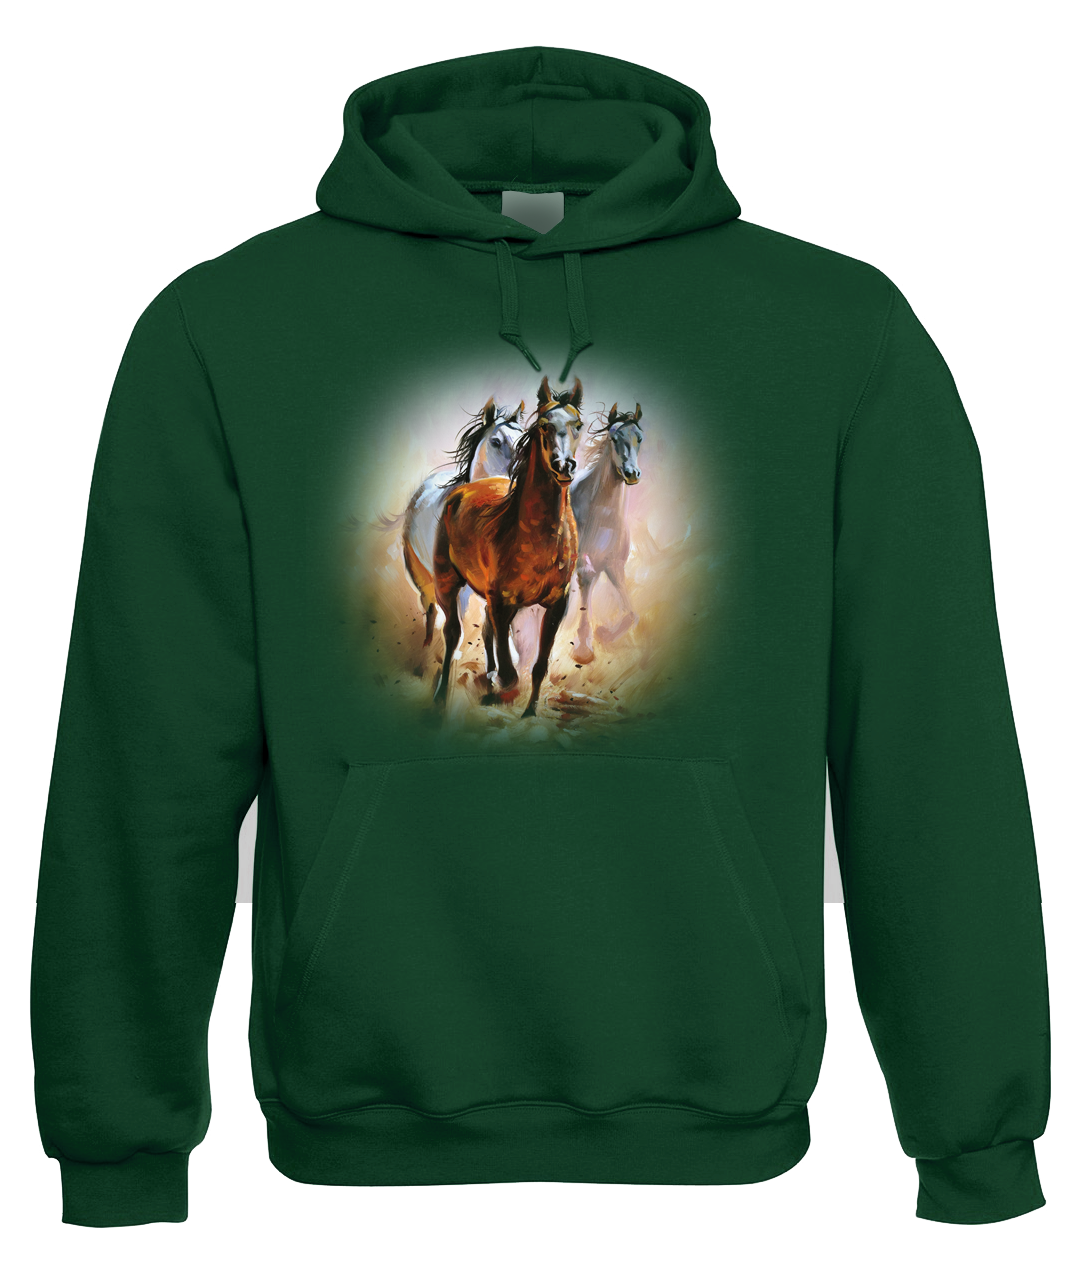 Mikina s koněm - Malované koně Velikost: M, Barva: Zelená lahvová